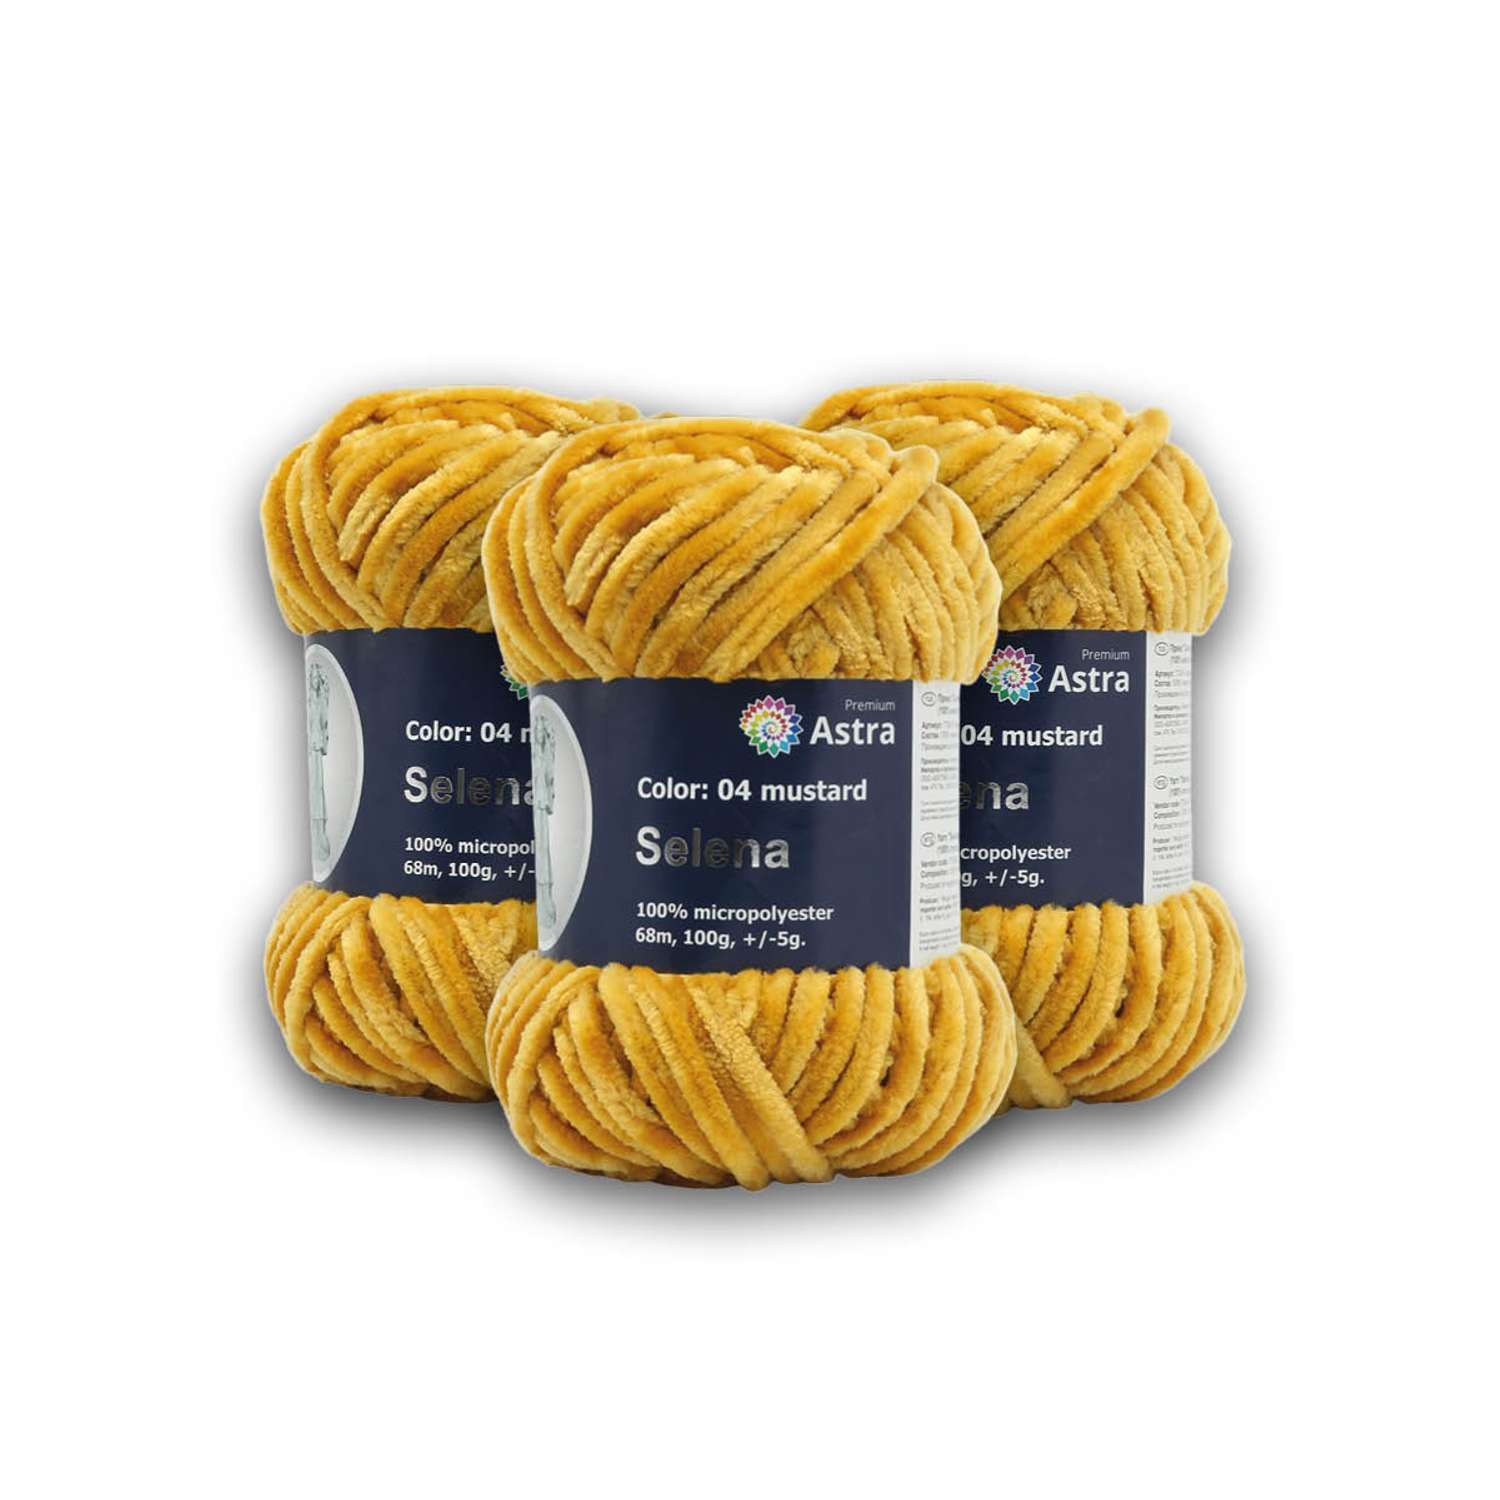 Пряжа для вязания Astra Premium селена мягкая микрополиэстер 100 гр 68 м 04 горчичный 3 мотка - фото 2